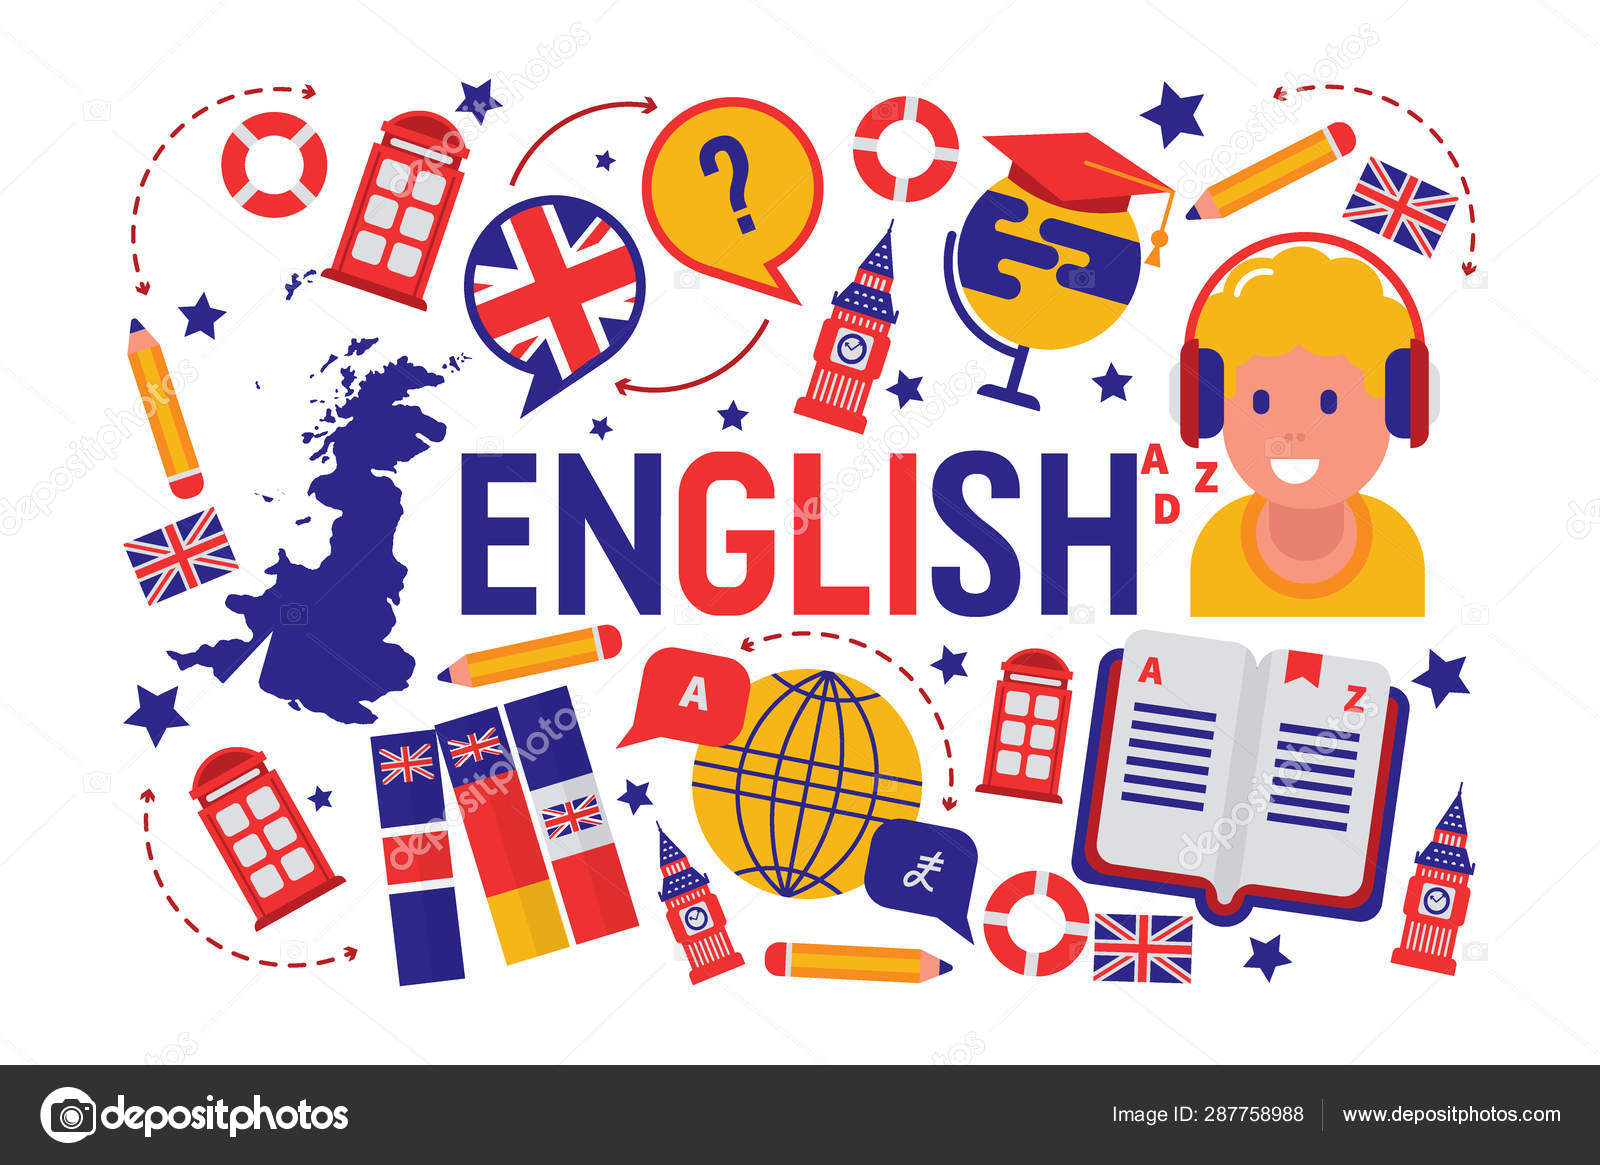 British english language learning class vector illustration. Brittish